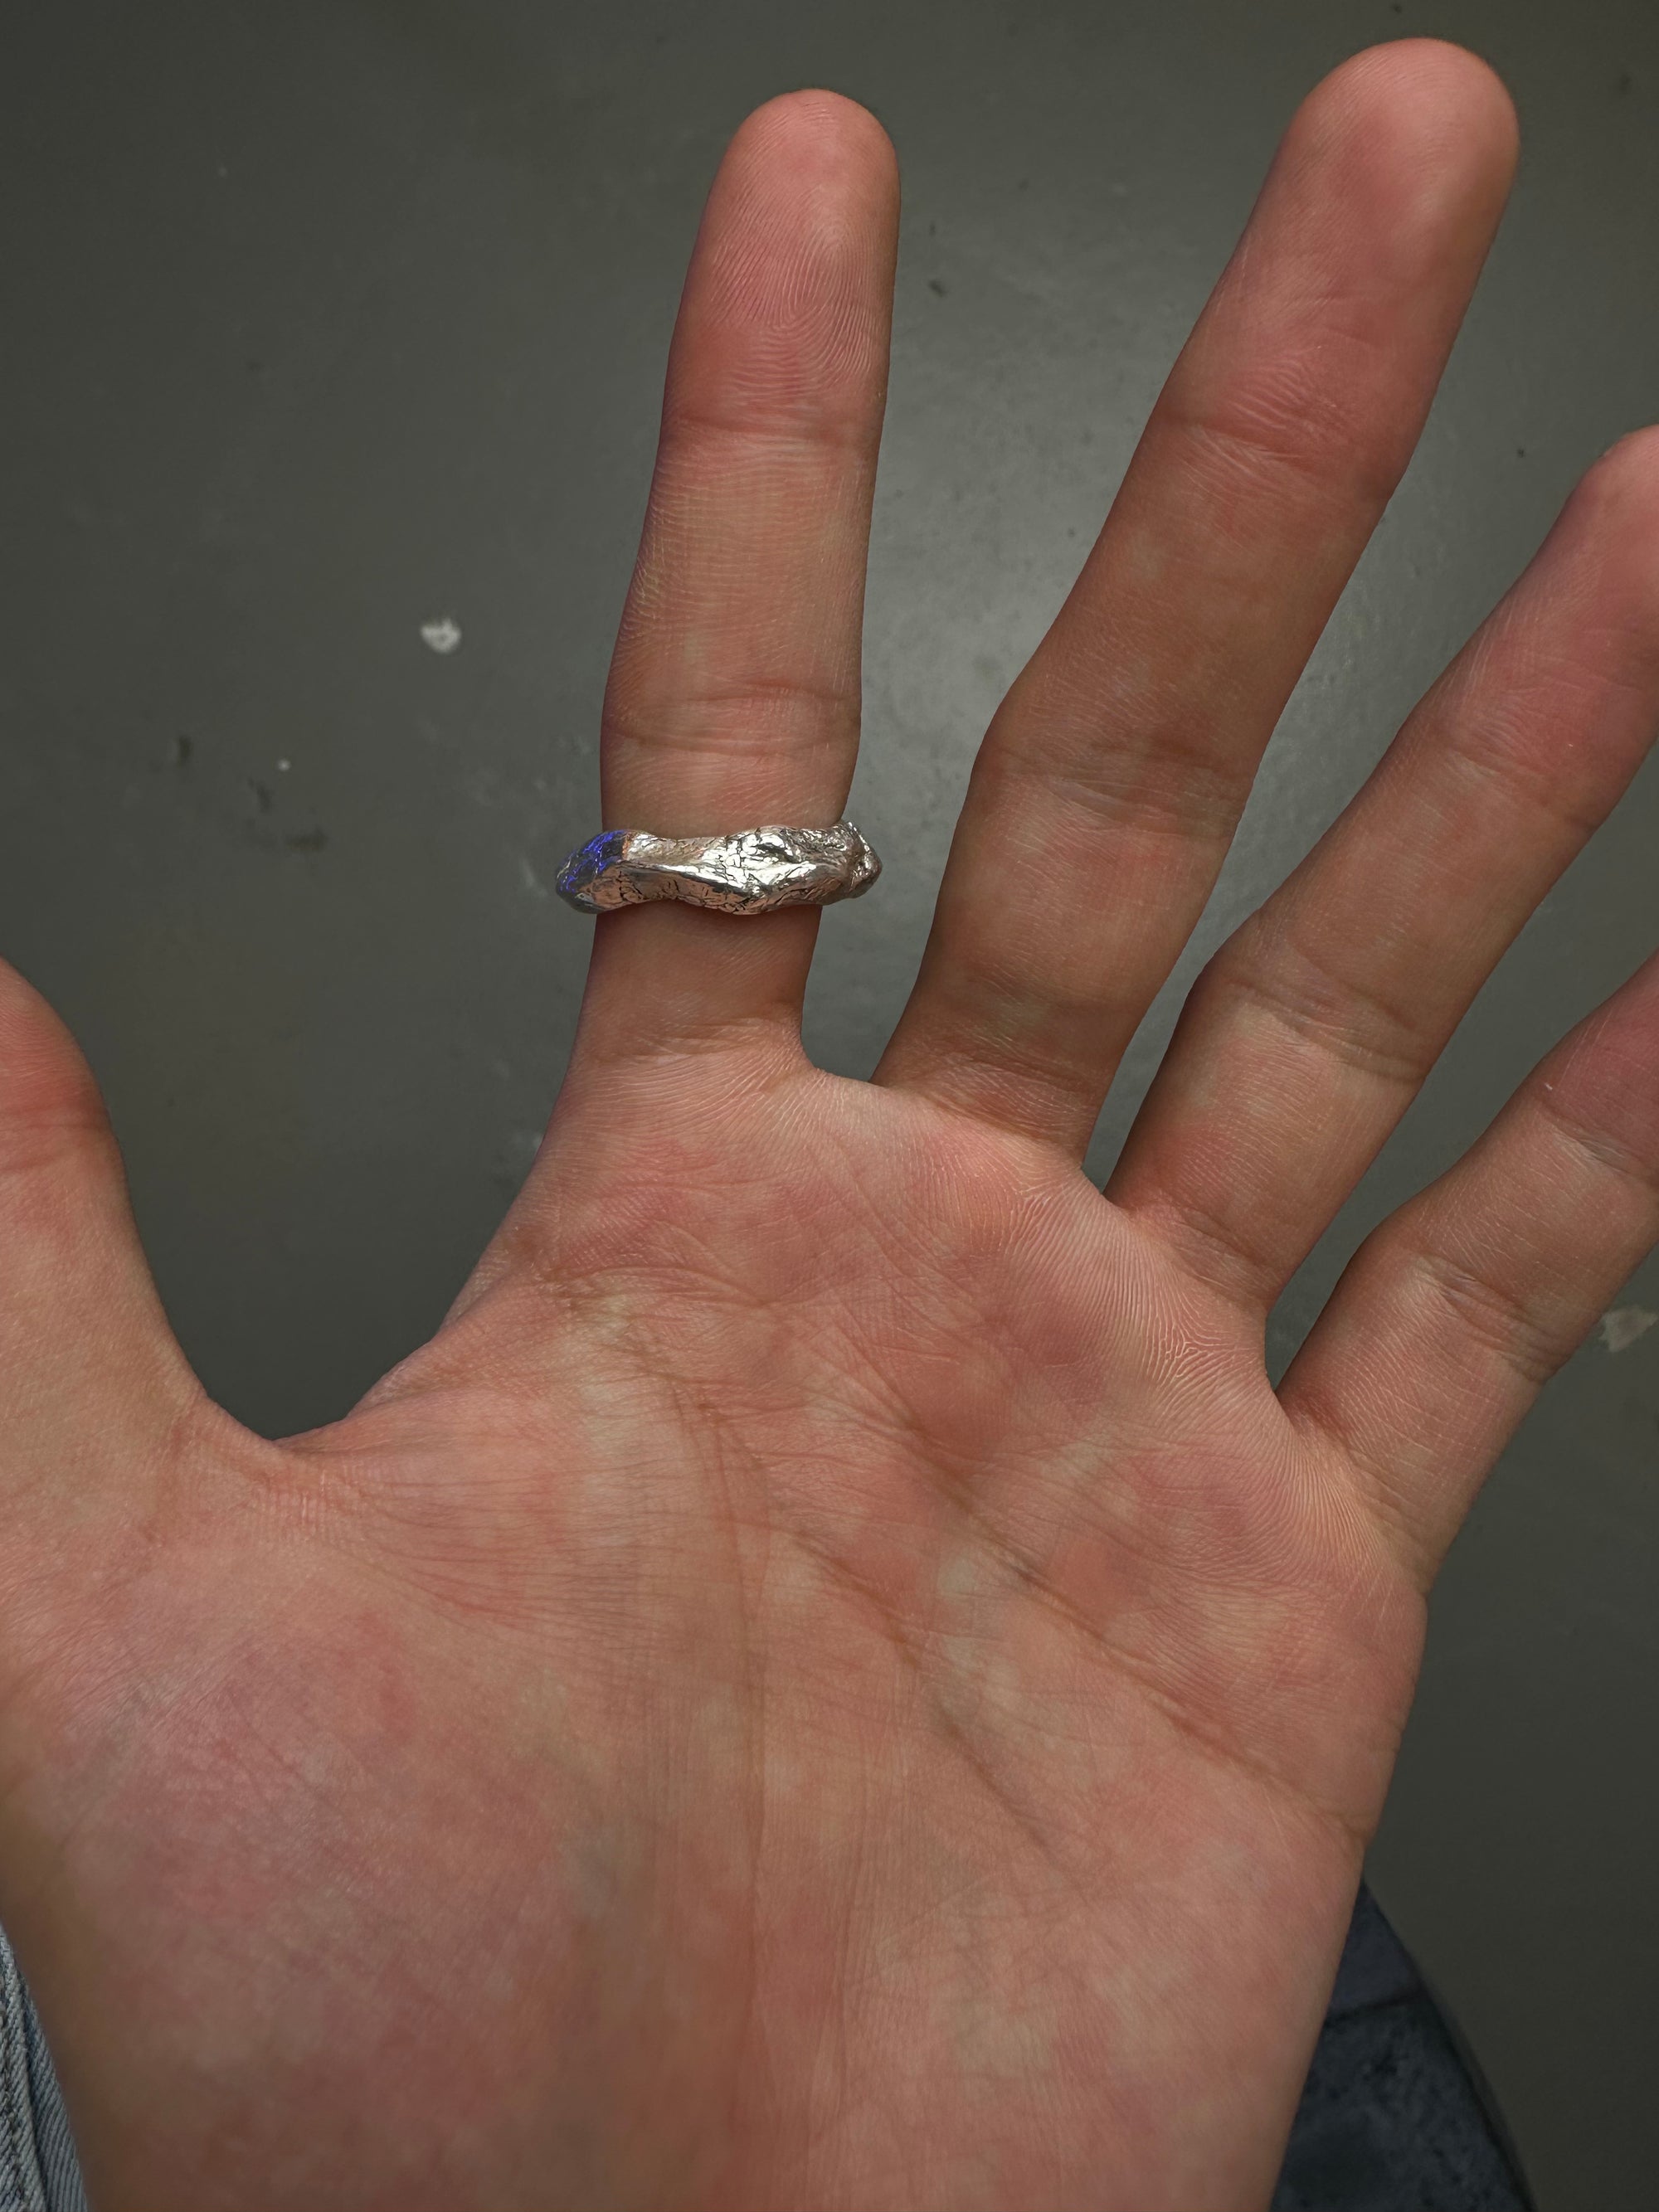 Ringsbyclausen Ring „Handgeformt“ Tragebild vom Zeigefinger vor grauem Boden